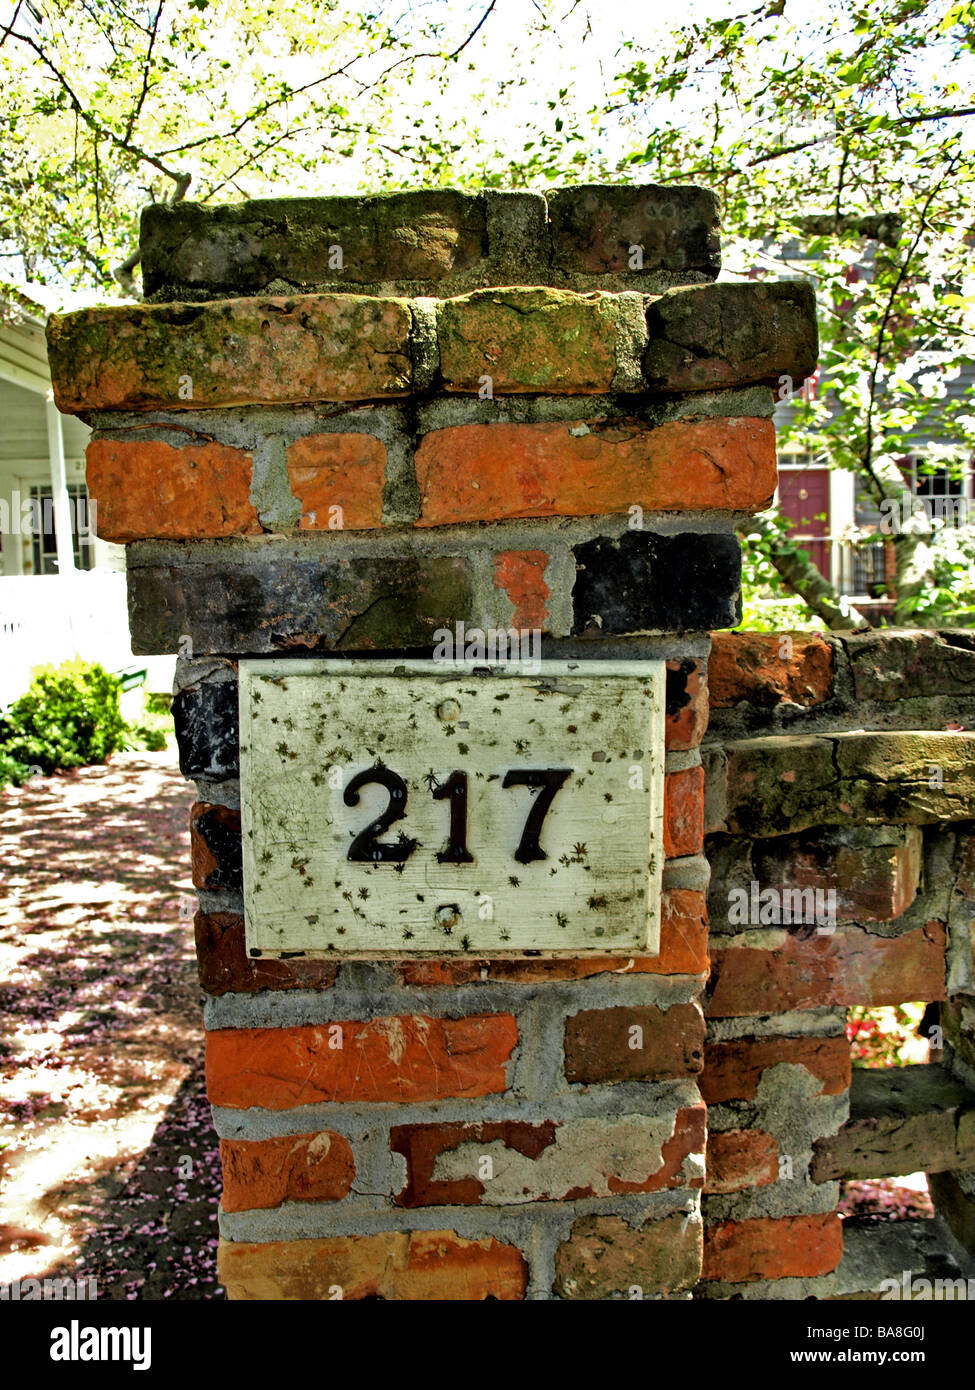 Muro di mattoni pietra angolare con numero 217 appena al di sotto del cappuccio, multi-colore di mattoni e muratura Foto Stock